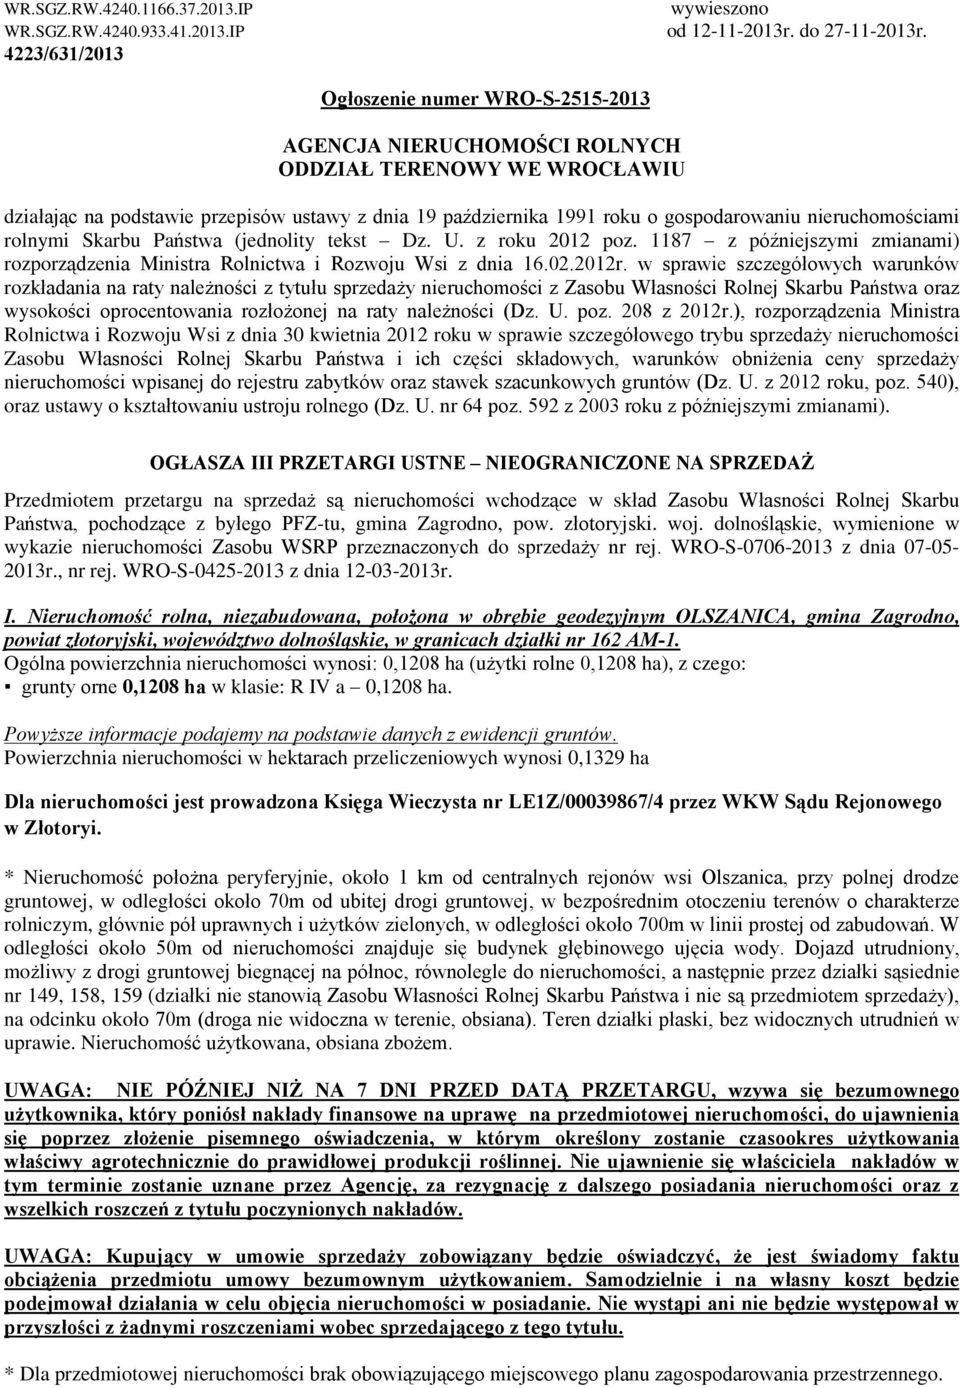 rolnymi Skarbu Pañstwa (jednolity tekst Dz. U. z roku 2012 poz. 1187 z póêniejszymi zmianami) rozporz¹dzenia Ministra Rolnictwa i Rozwoju Wsi z dnia 16.02.2012r.